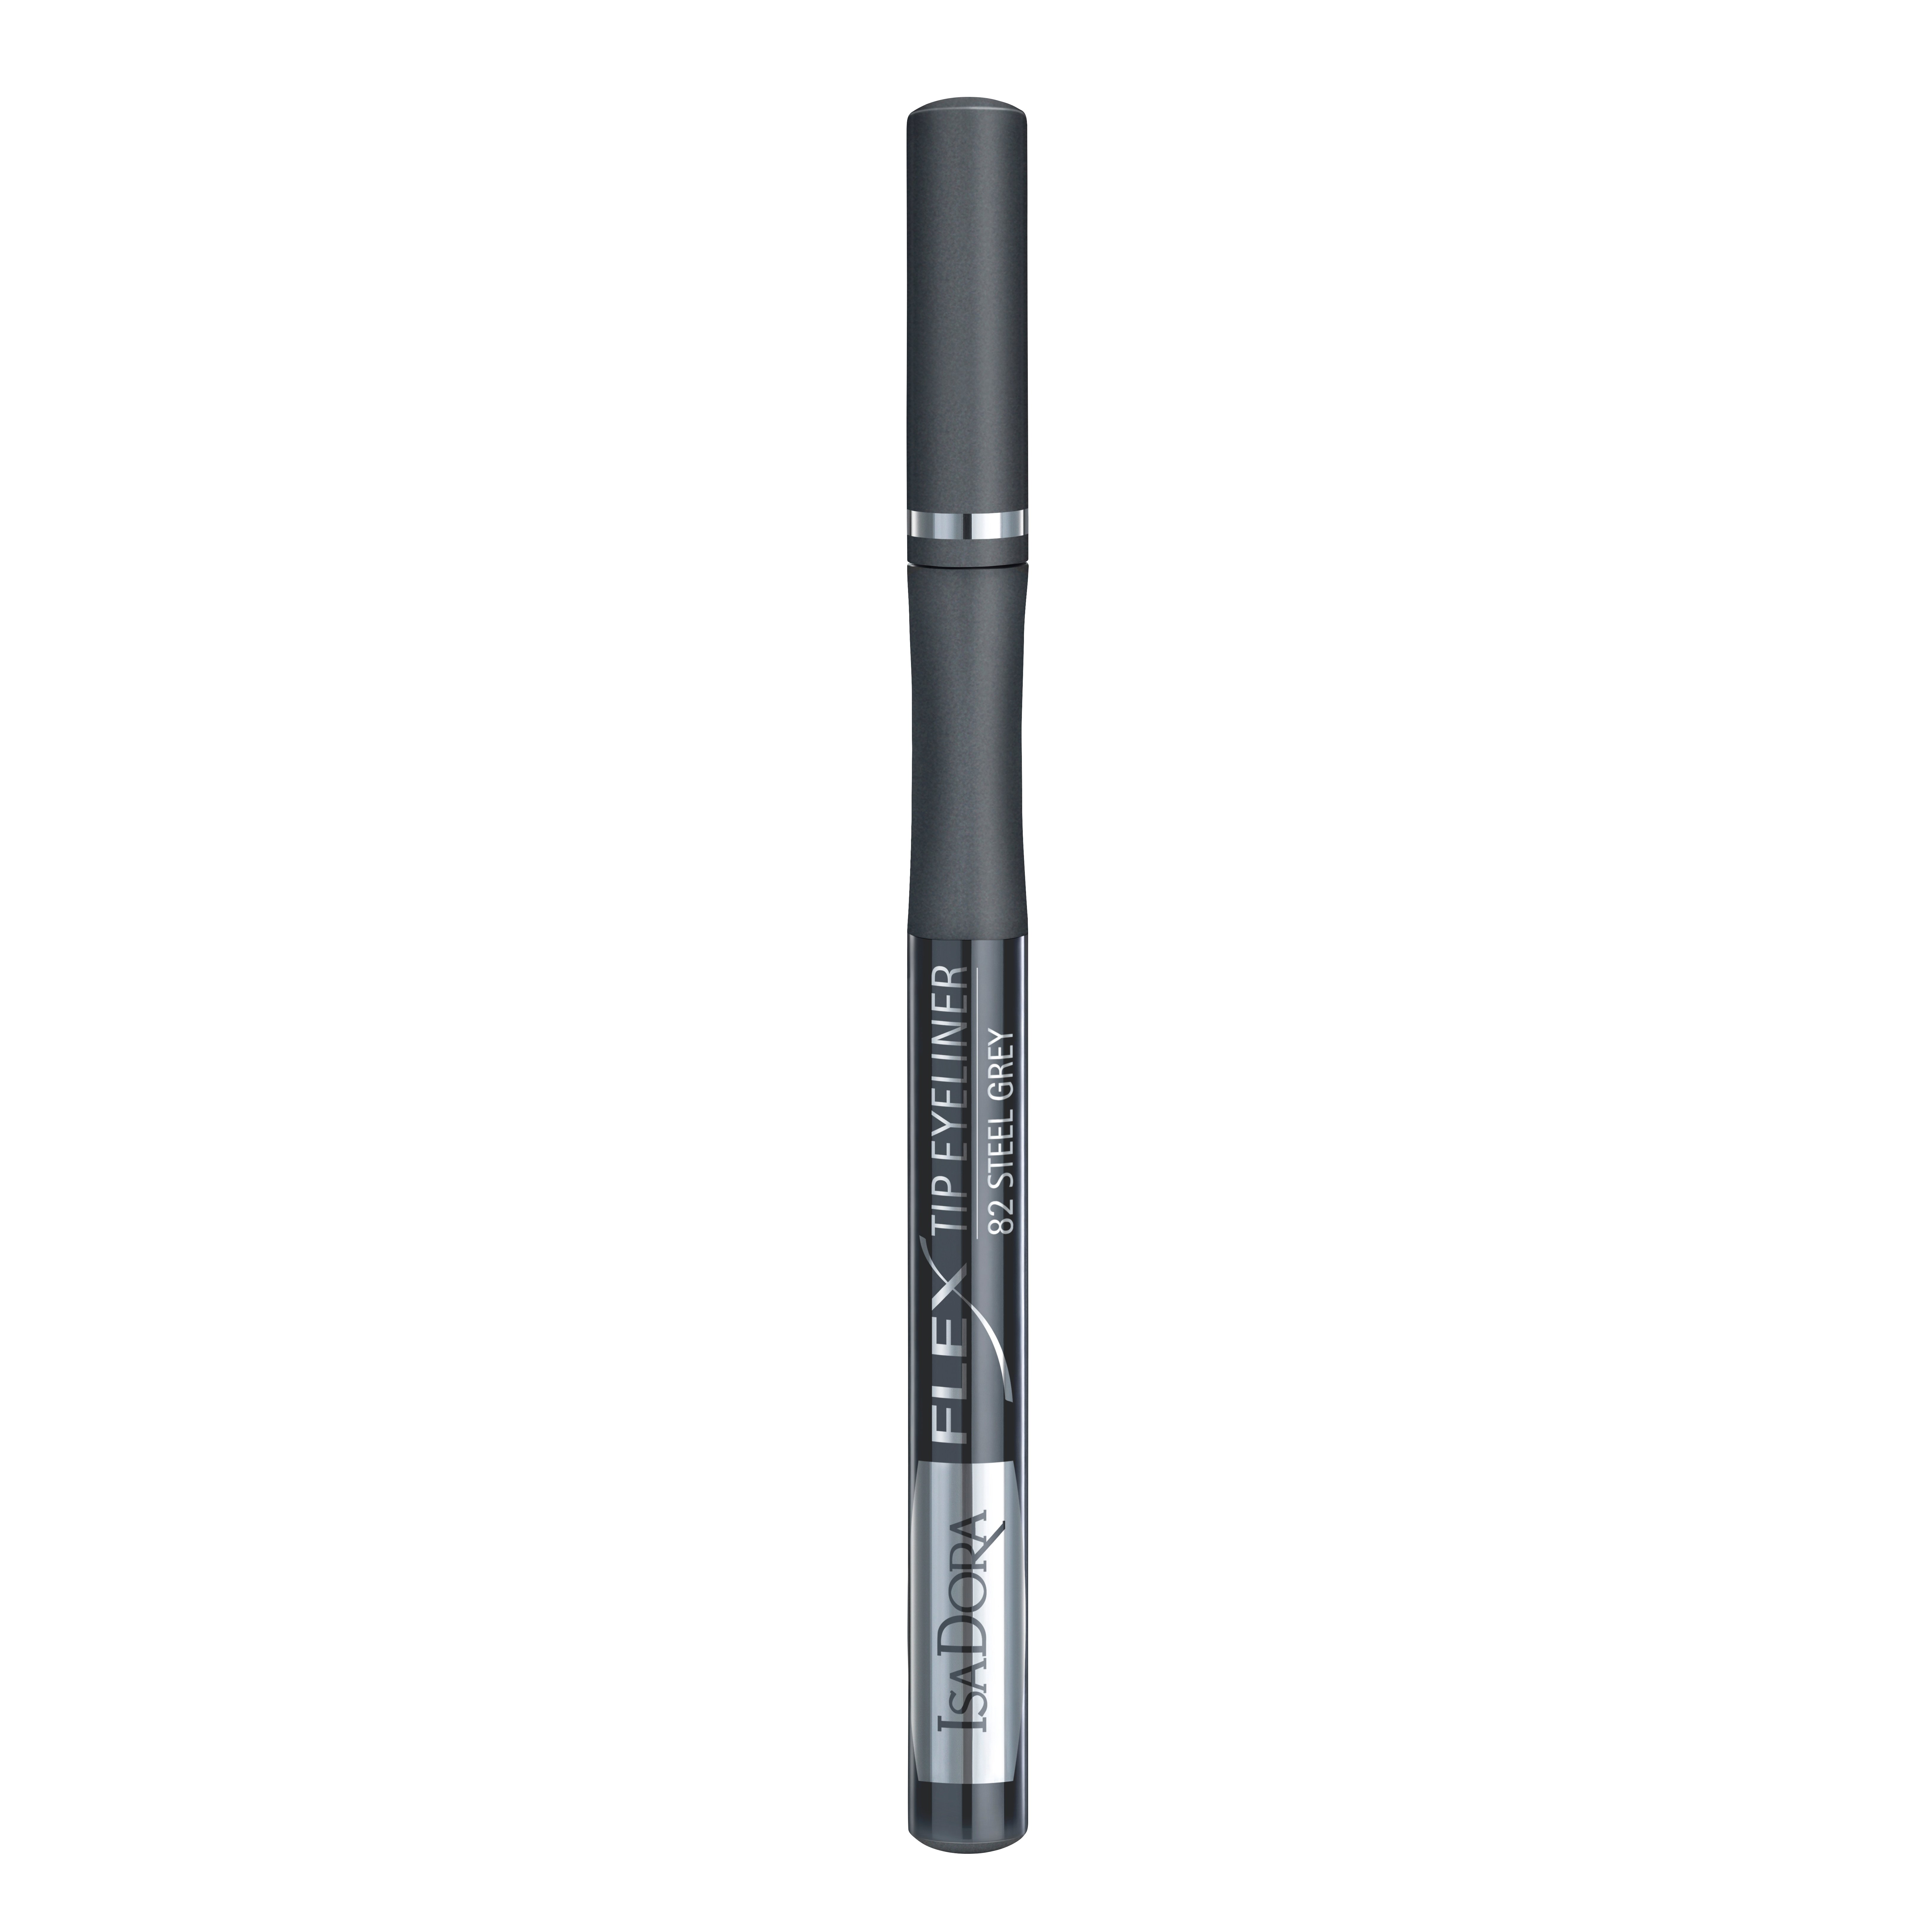 Підводка для очей IsaDora Flex Tip Eyeliner, відтінок 82 (Сталевий сірий), об`єм 1 мл (574893) - фото 2